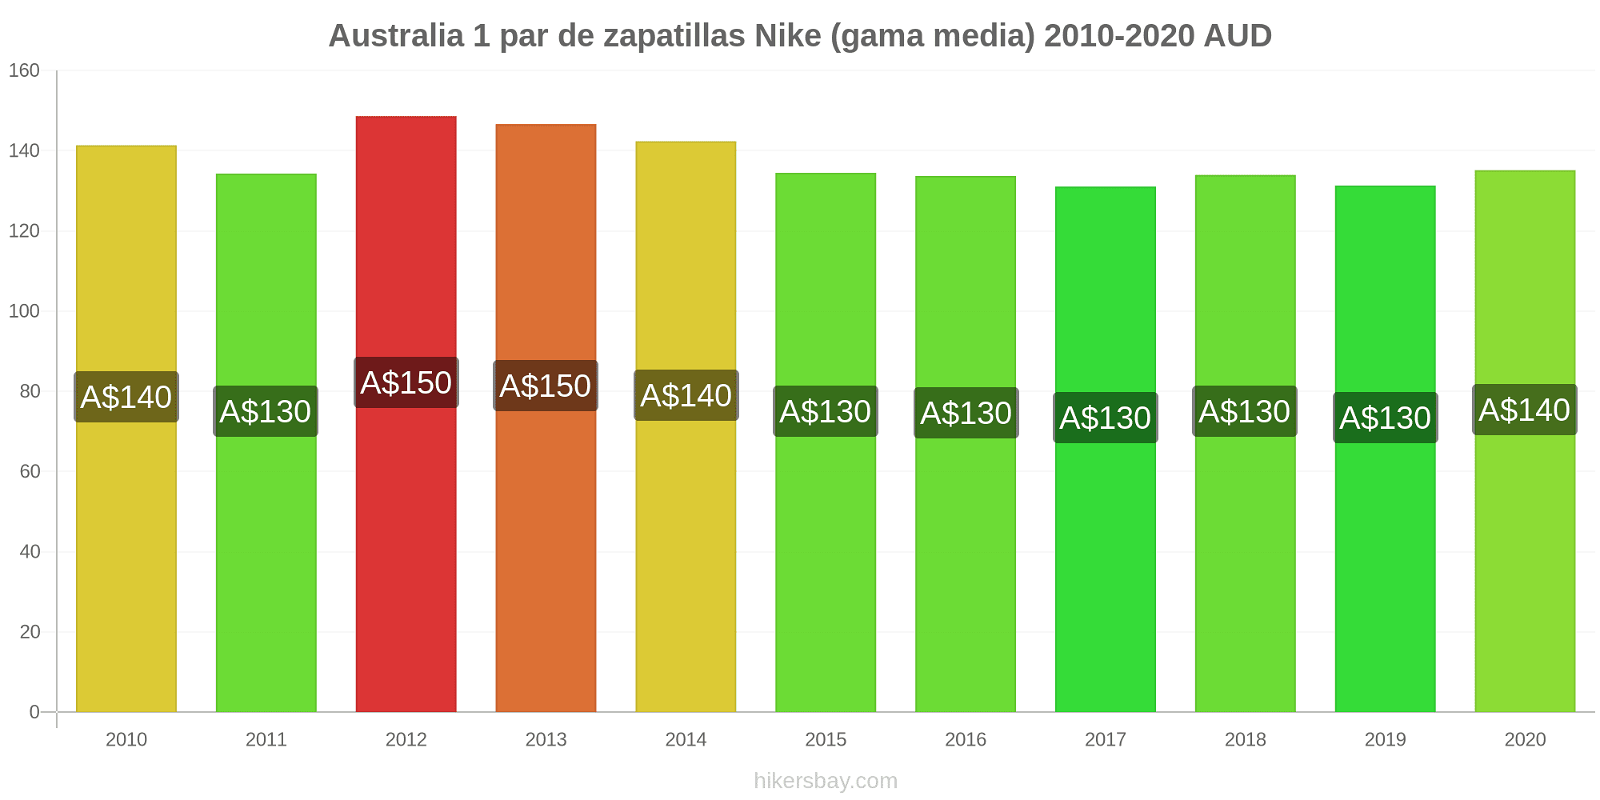 Australia cambios de precios 1 par de zapatillas Nike (gama media) hikersbay.com